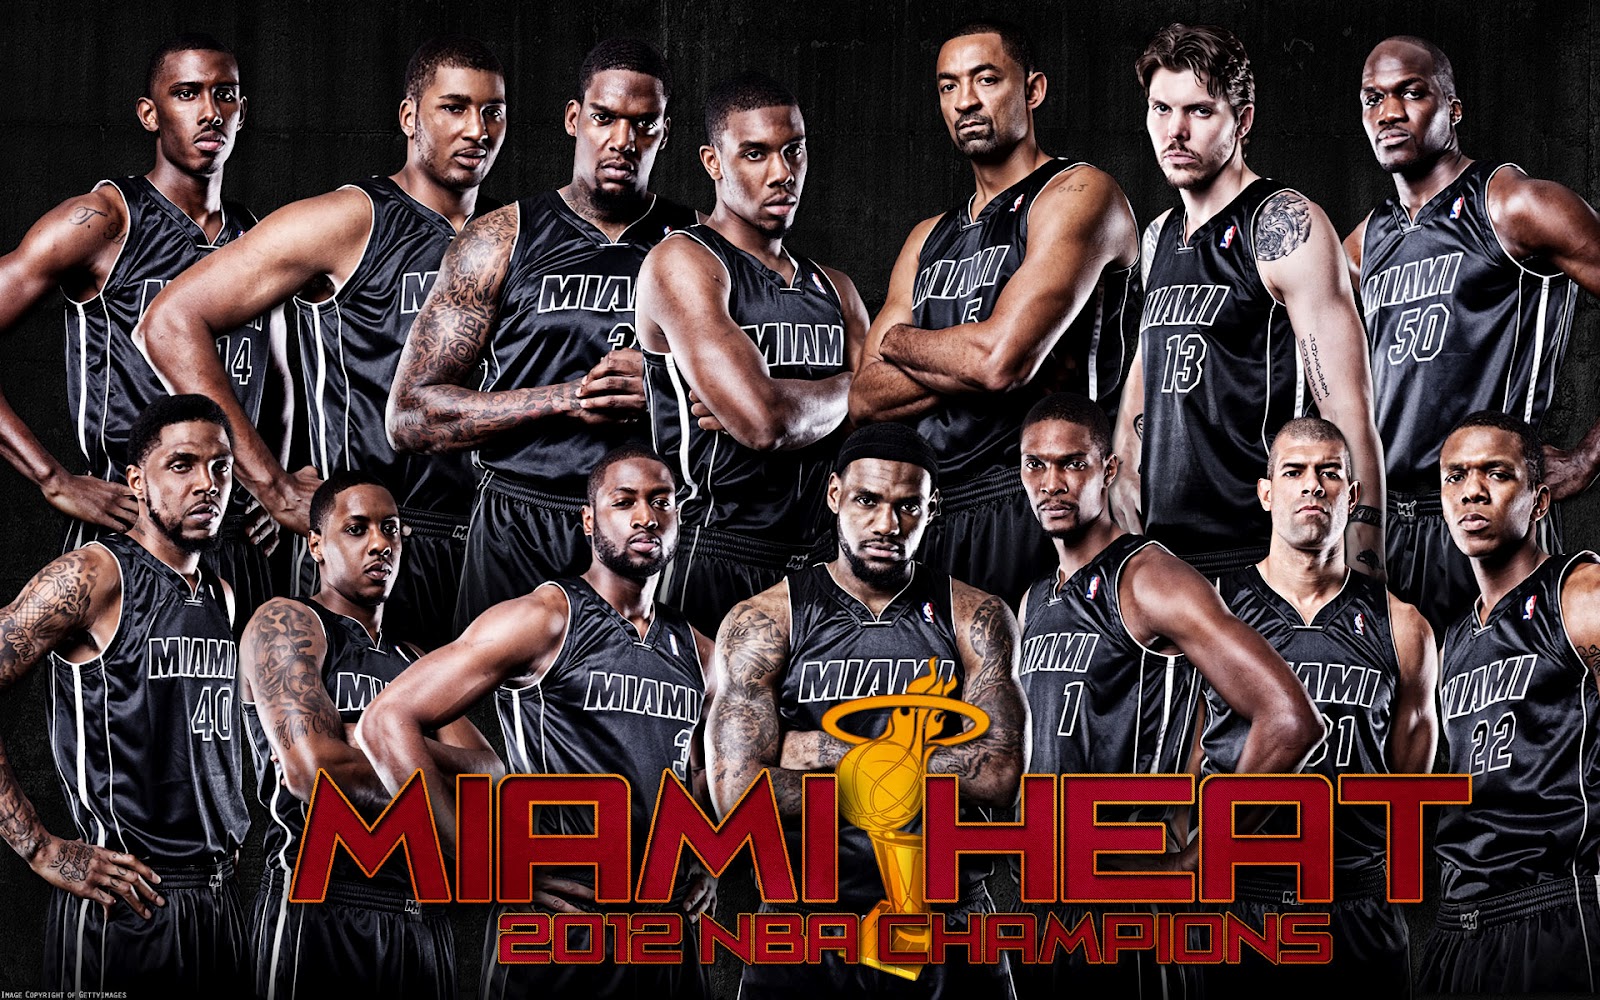 http://4.bp.blogspot.com/-mfFsWrO1Gno/UPRwAKezVFI/AAAAAAAAdJo/pFpkGOM5C6c/s1600/Miami+Heat+Basketball+Club+Players+HD+Wallpaper+2013+01.jpg